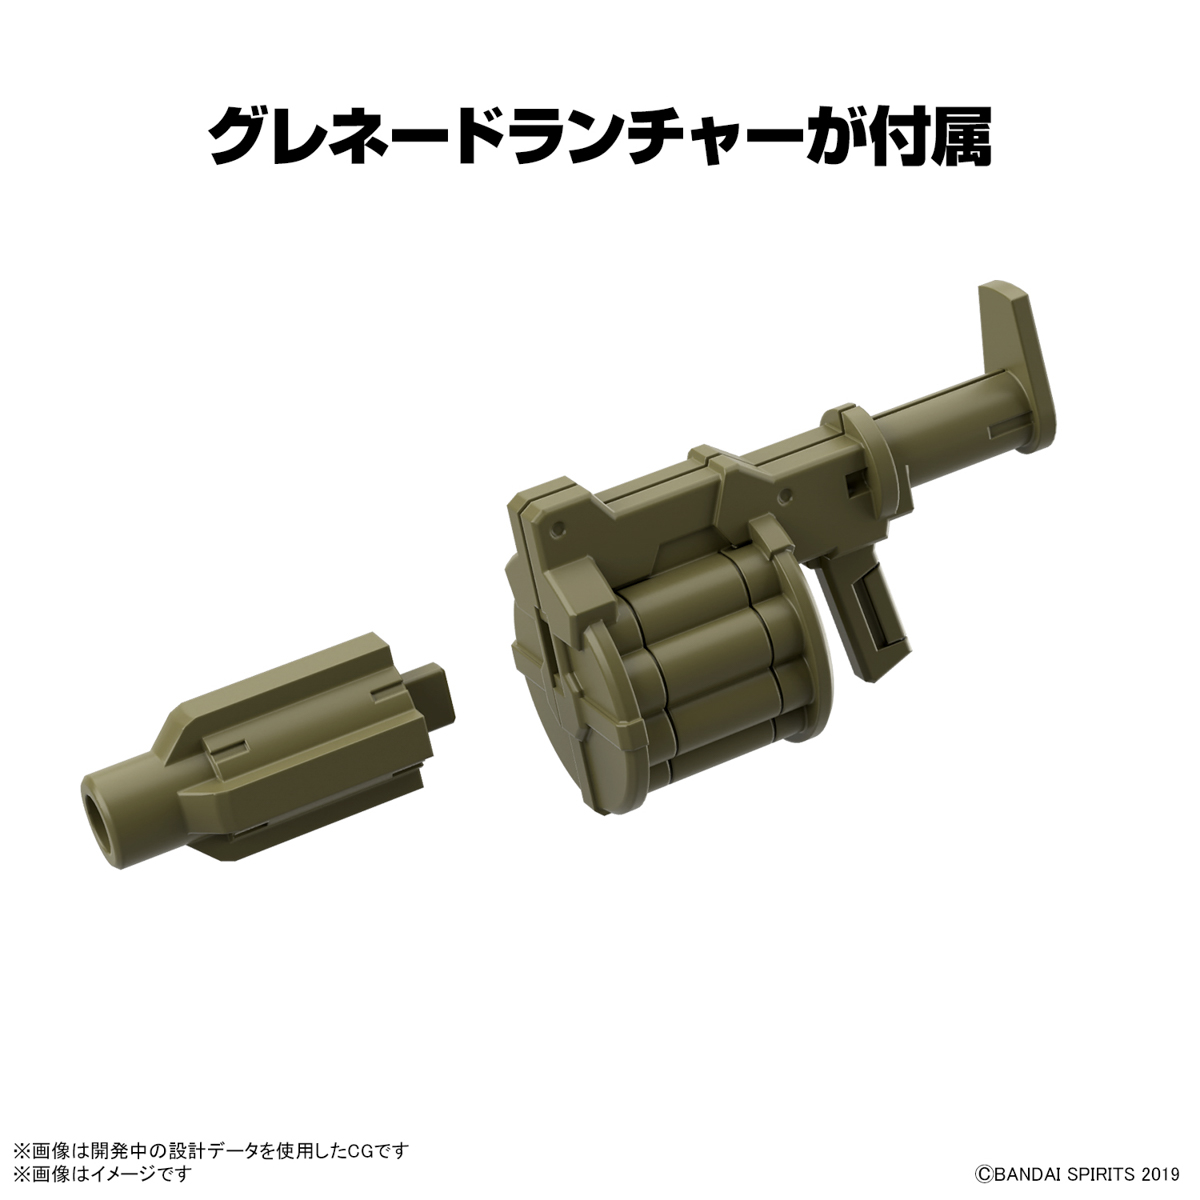 30MM 1/144『エグザビークル（装甲突撃メカVer.）』30 MINUTES MISSIONS プラモデル-005